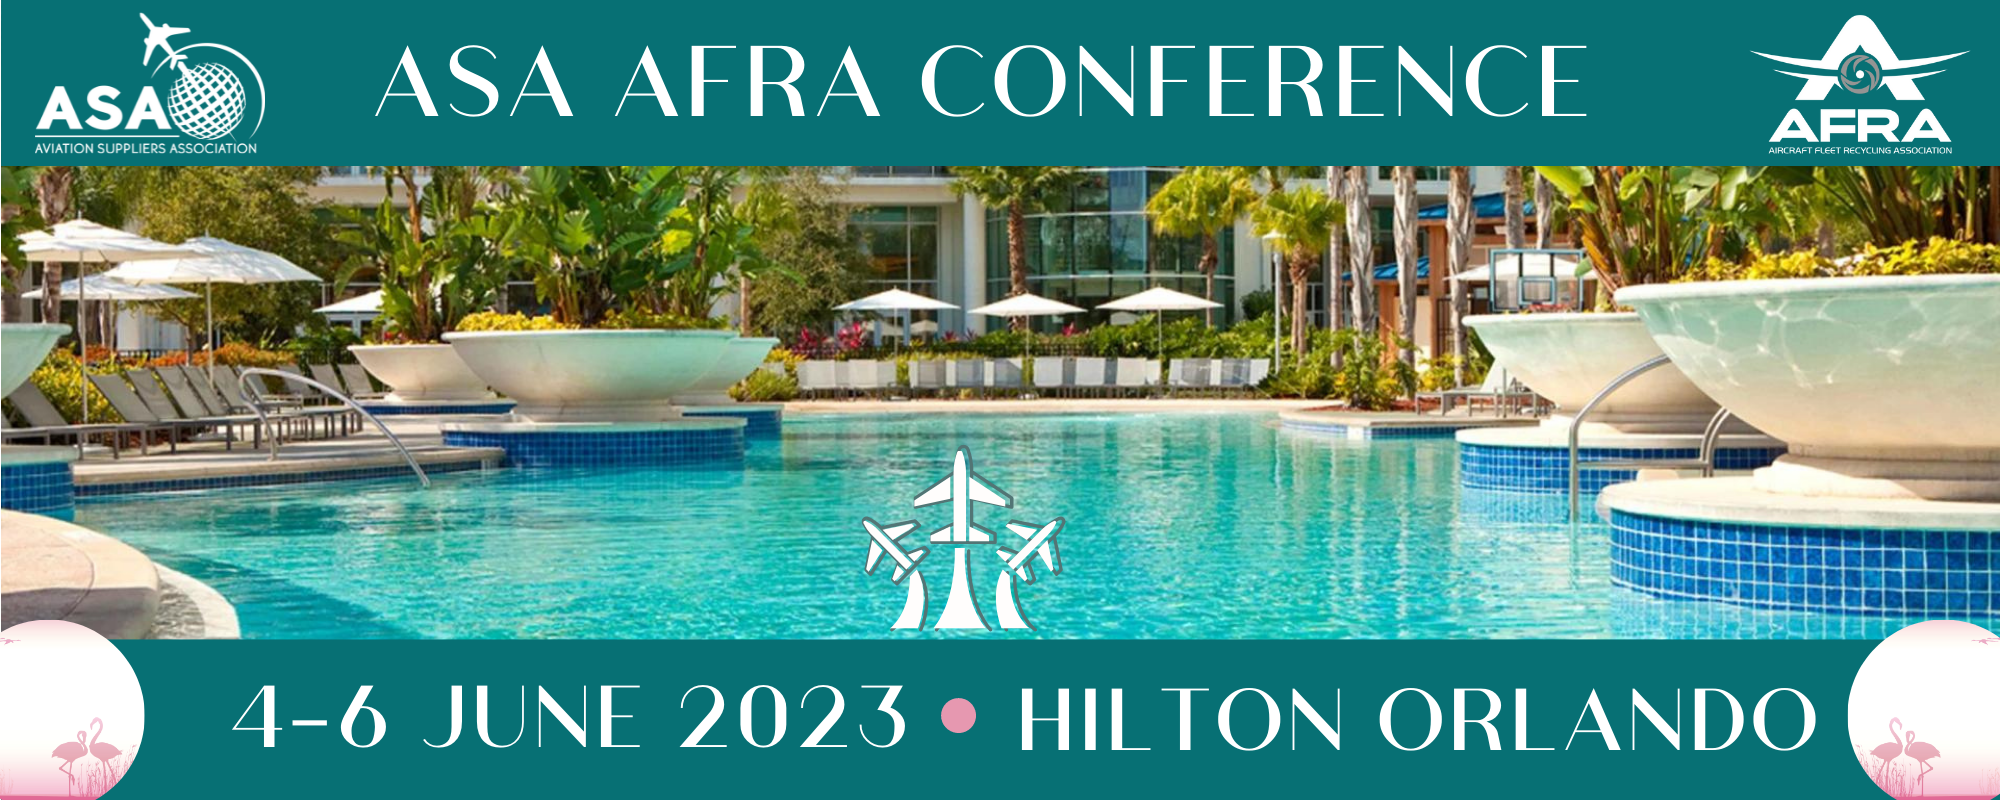 ASA AFRA 2023 Conference Registration Overview